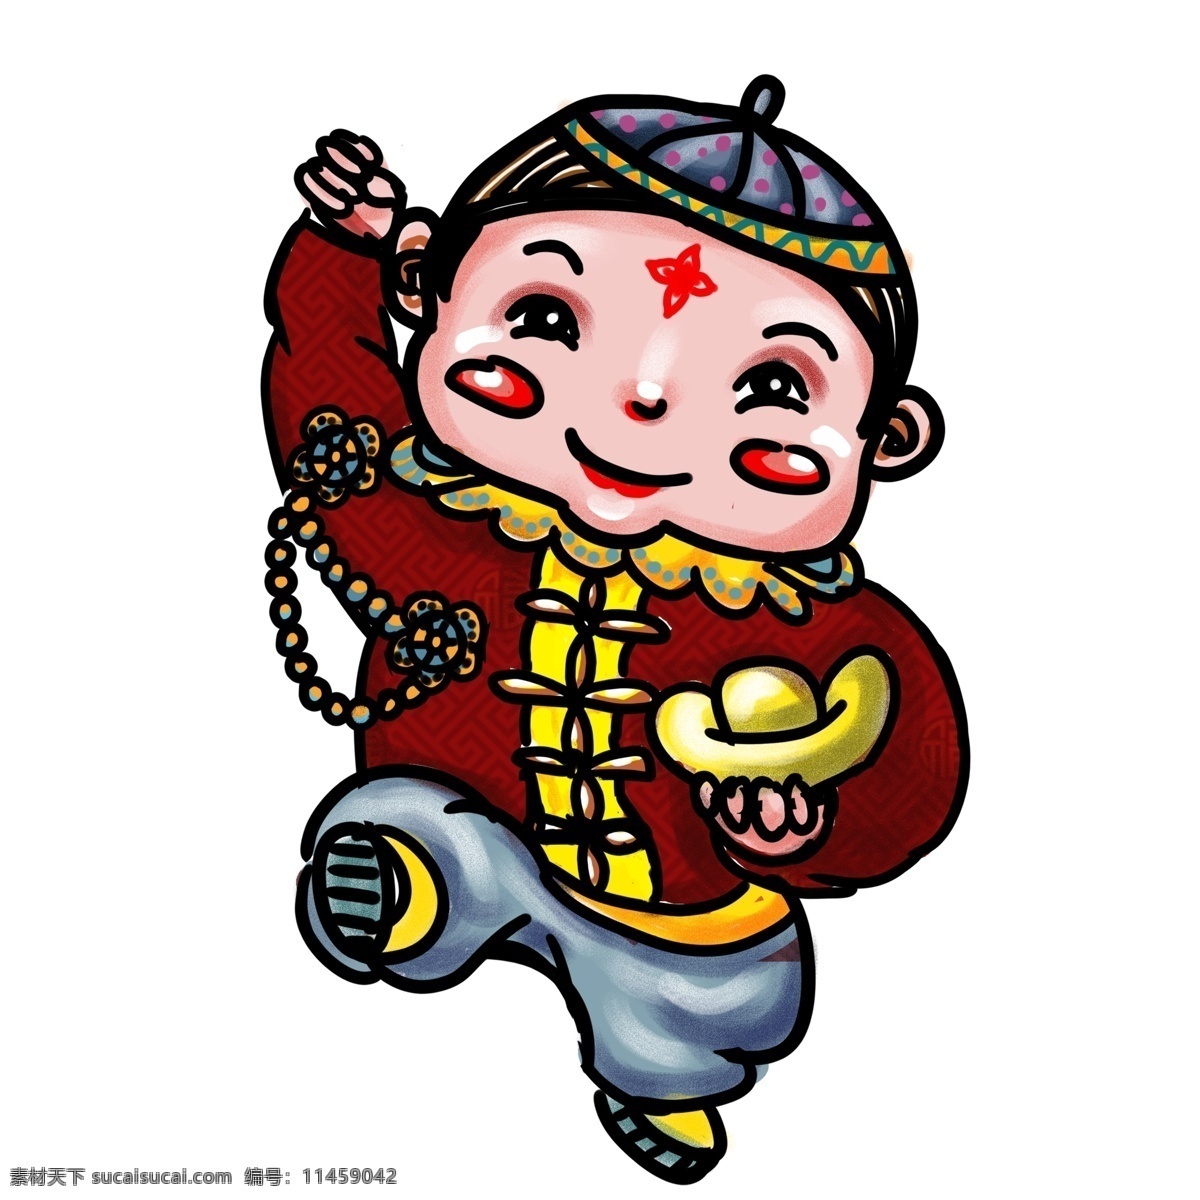 中国 风 捧 金元宝 年画 娃娃 中国风 插画 卡通 男孩 年画娃娃 手绘 新春 春节元素